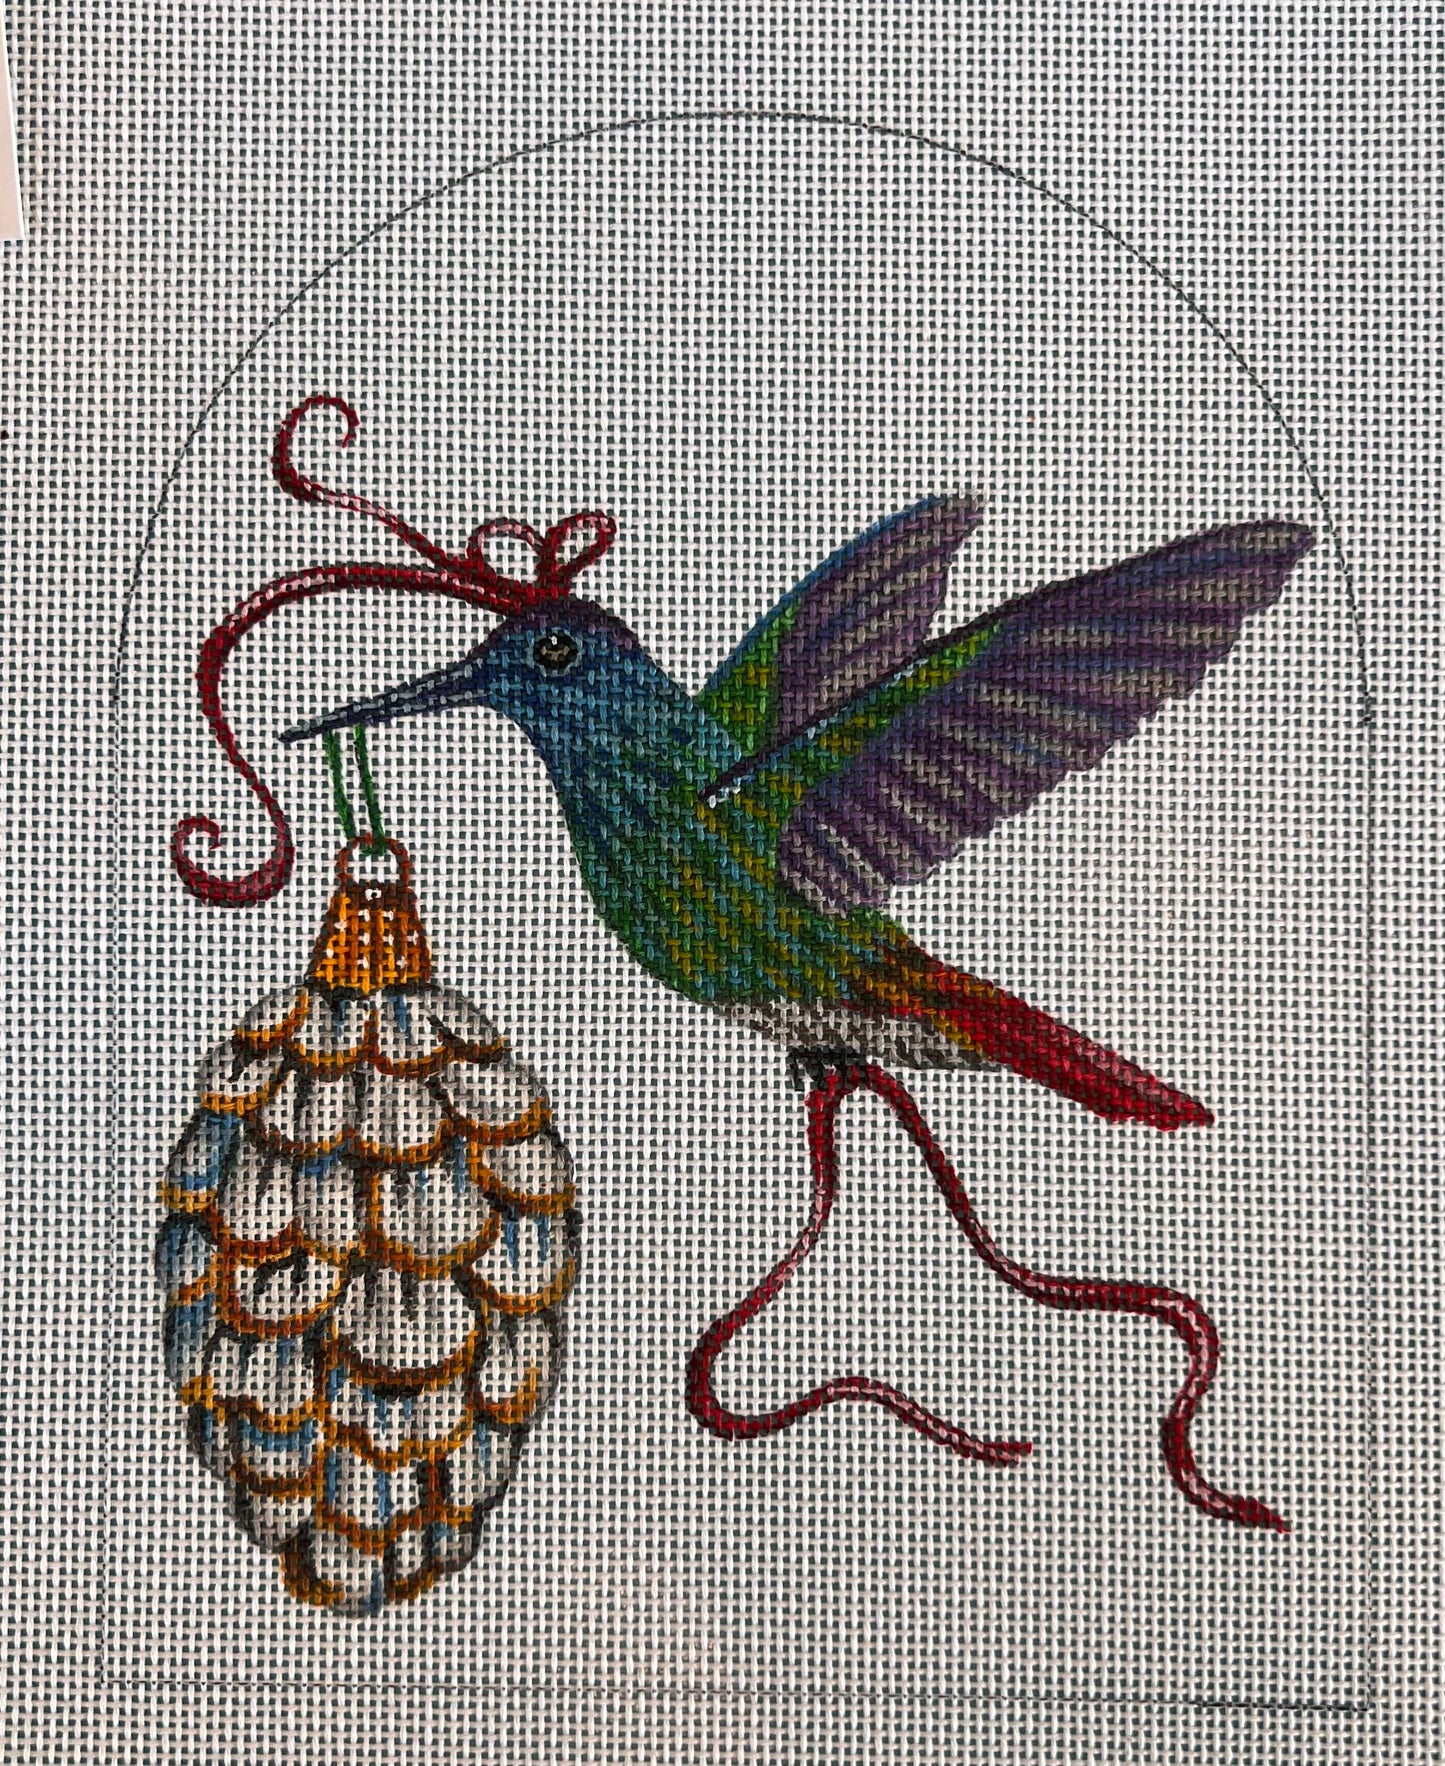 Purple Hummingbird Ornament